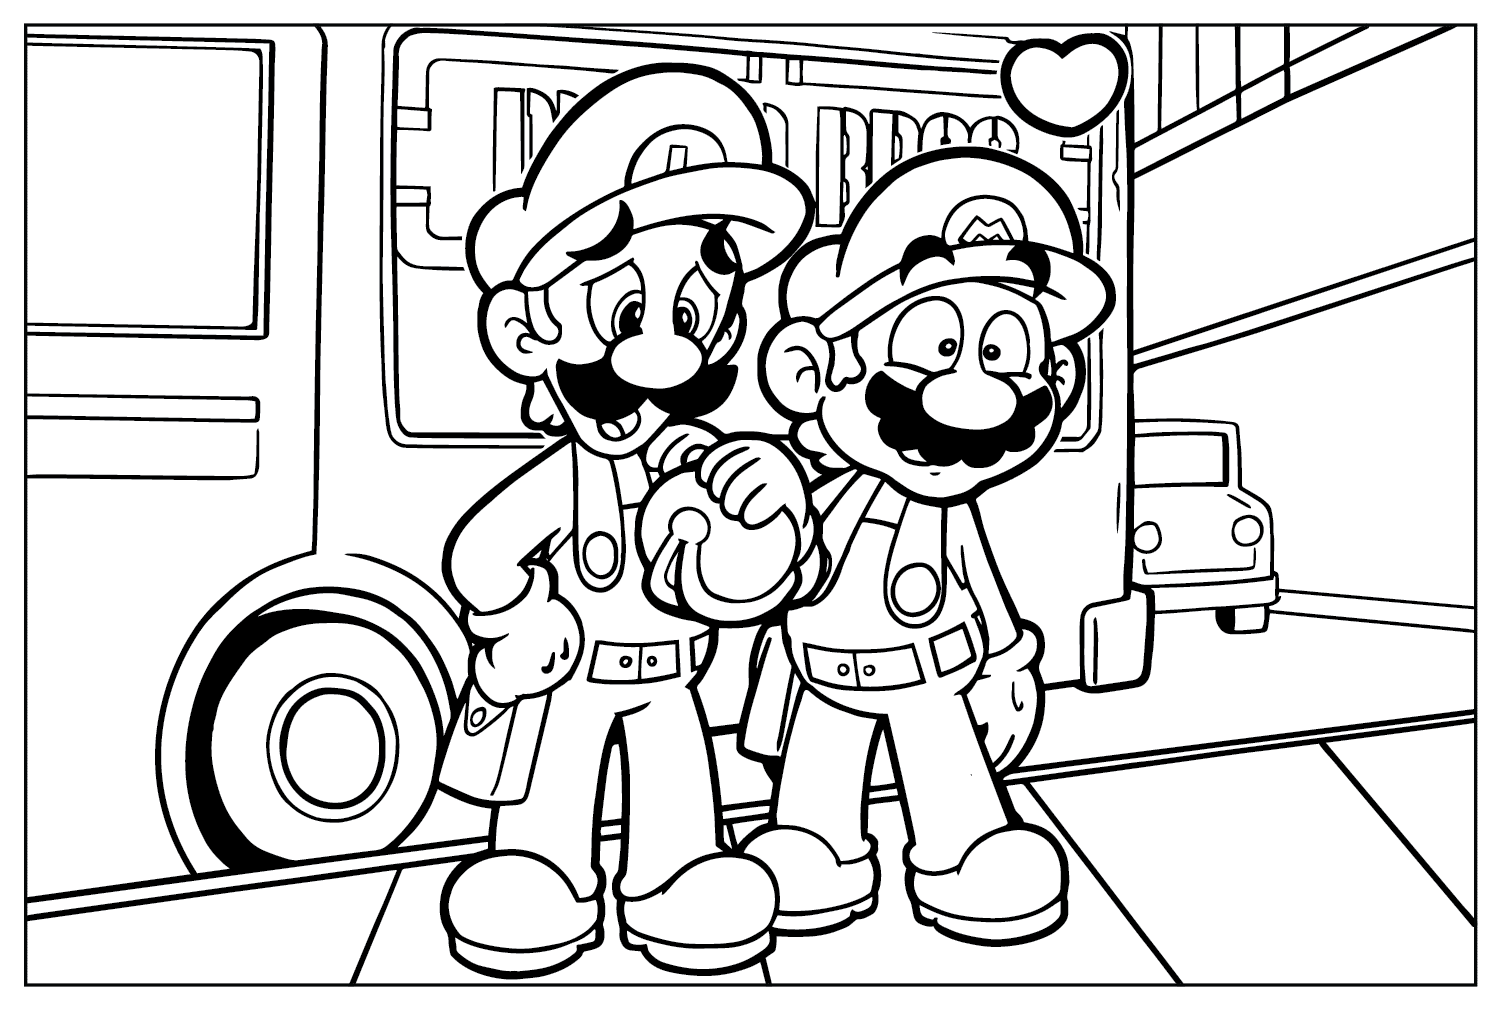 Раскраски из фильма Super Mario Bros. для детей из фильма Super Mario Bros.